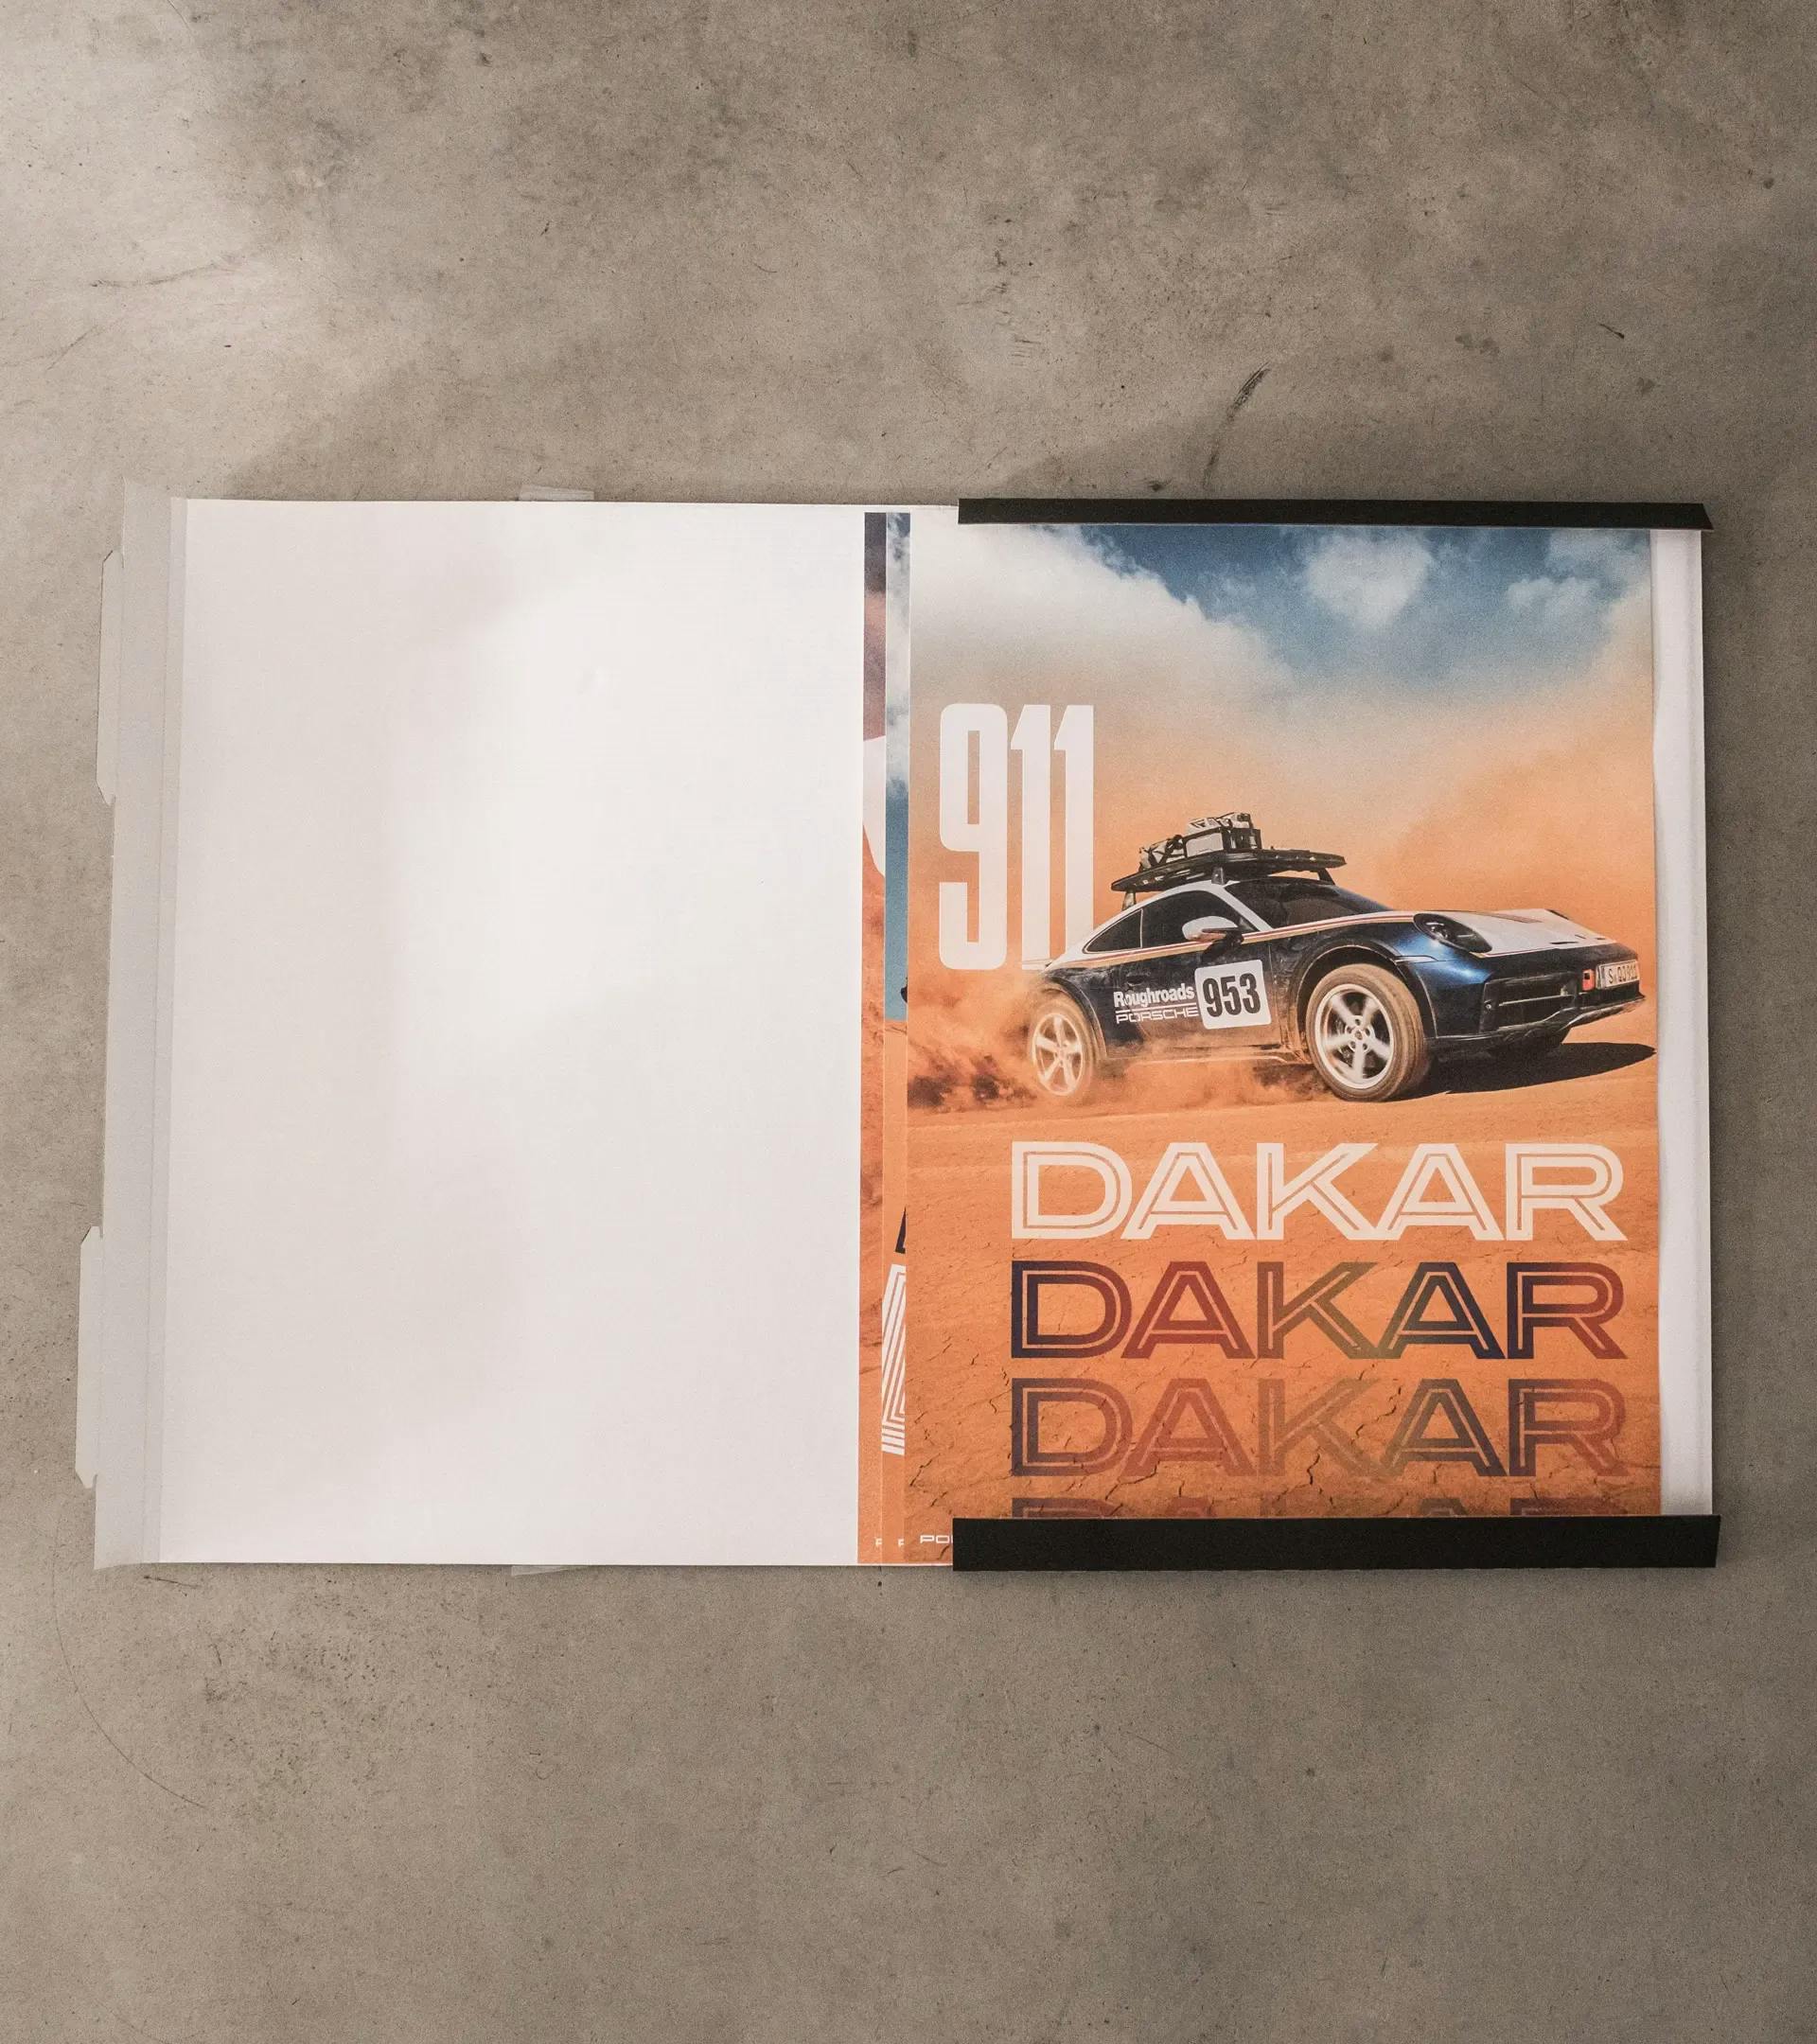 Juego de pósteres - 911 Dakar 8